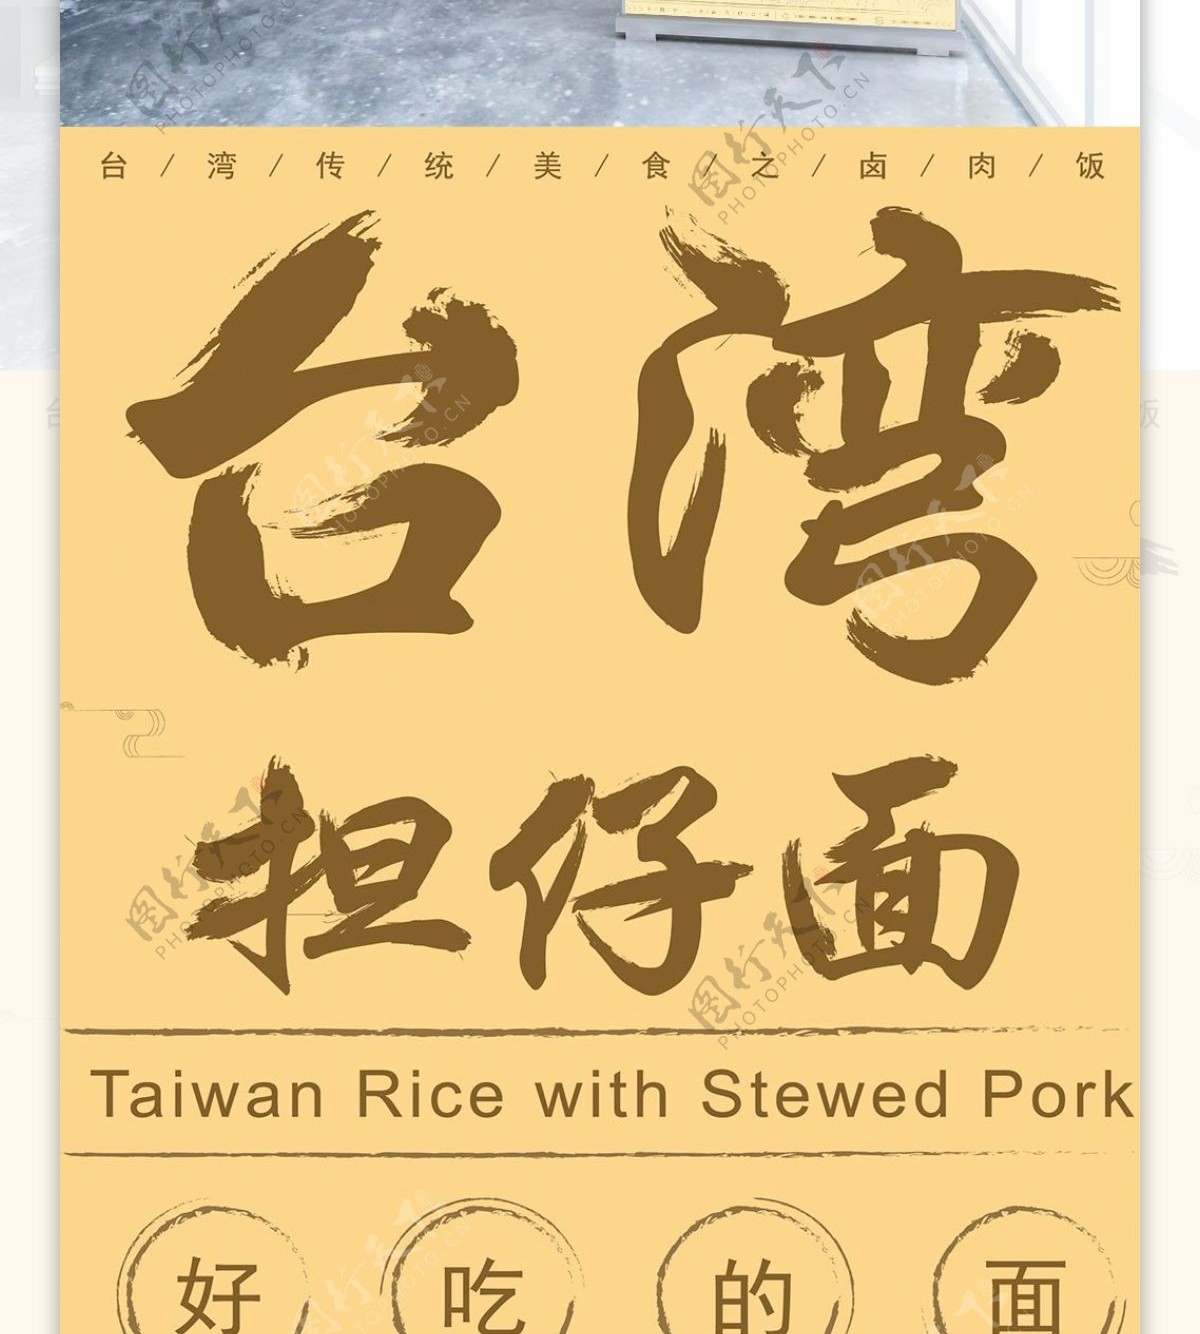 原创手绘台湾美食担仔面复古风展架